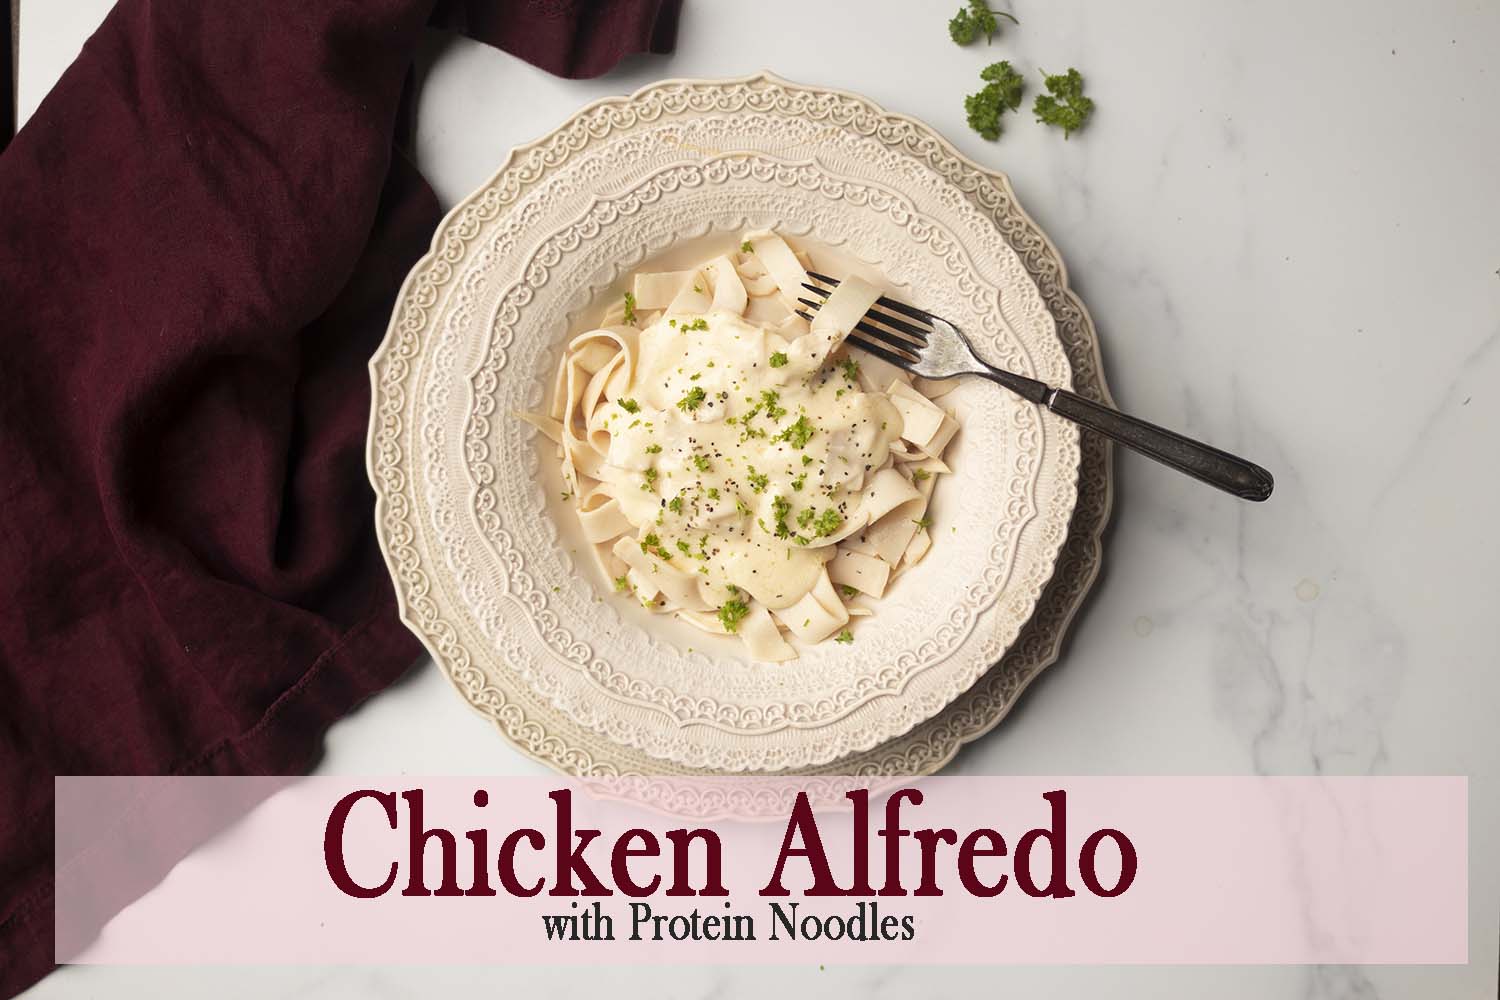 Protein Noodle Chicken Alfredo